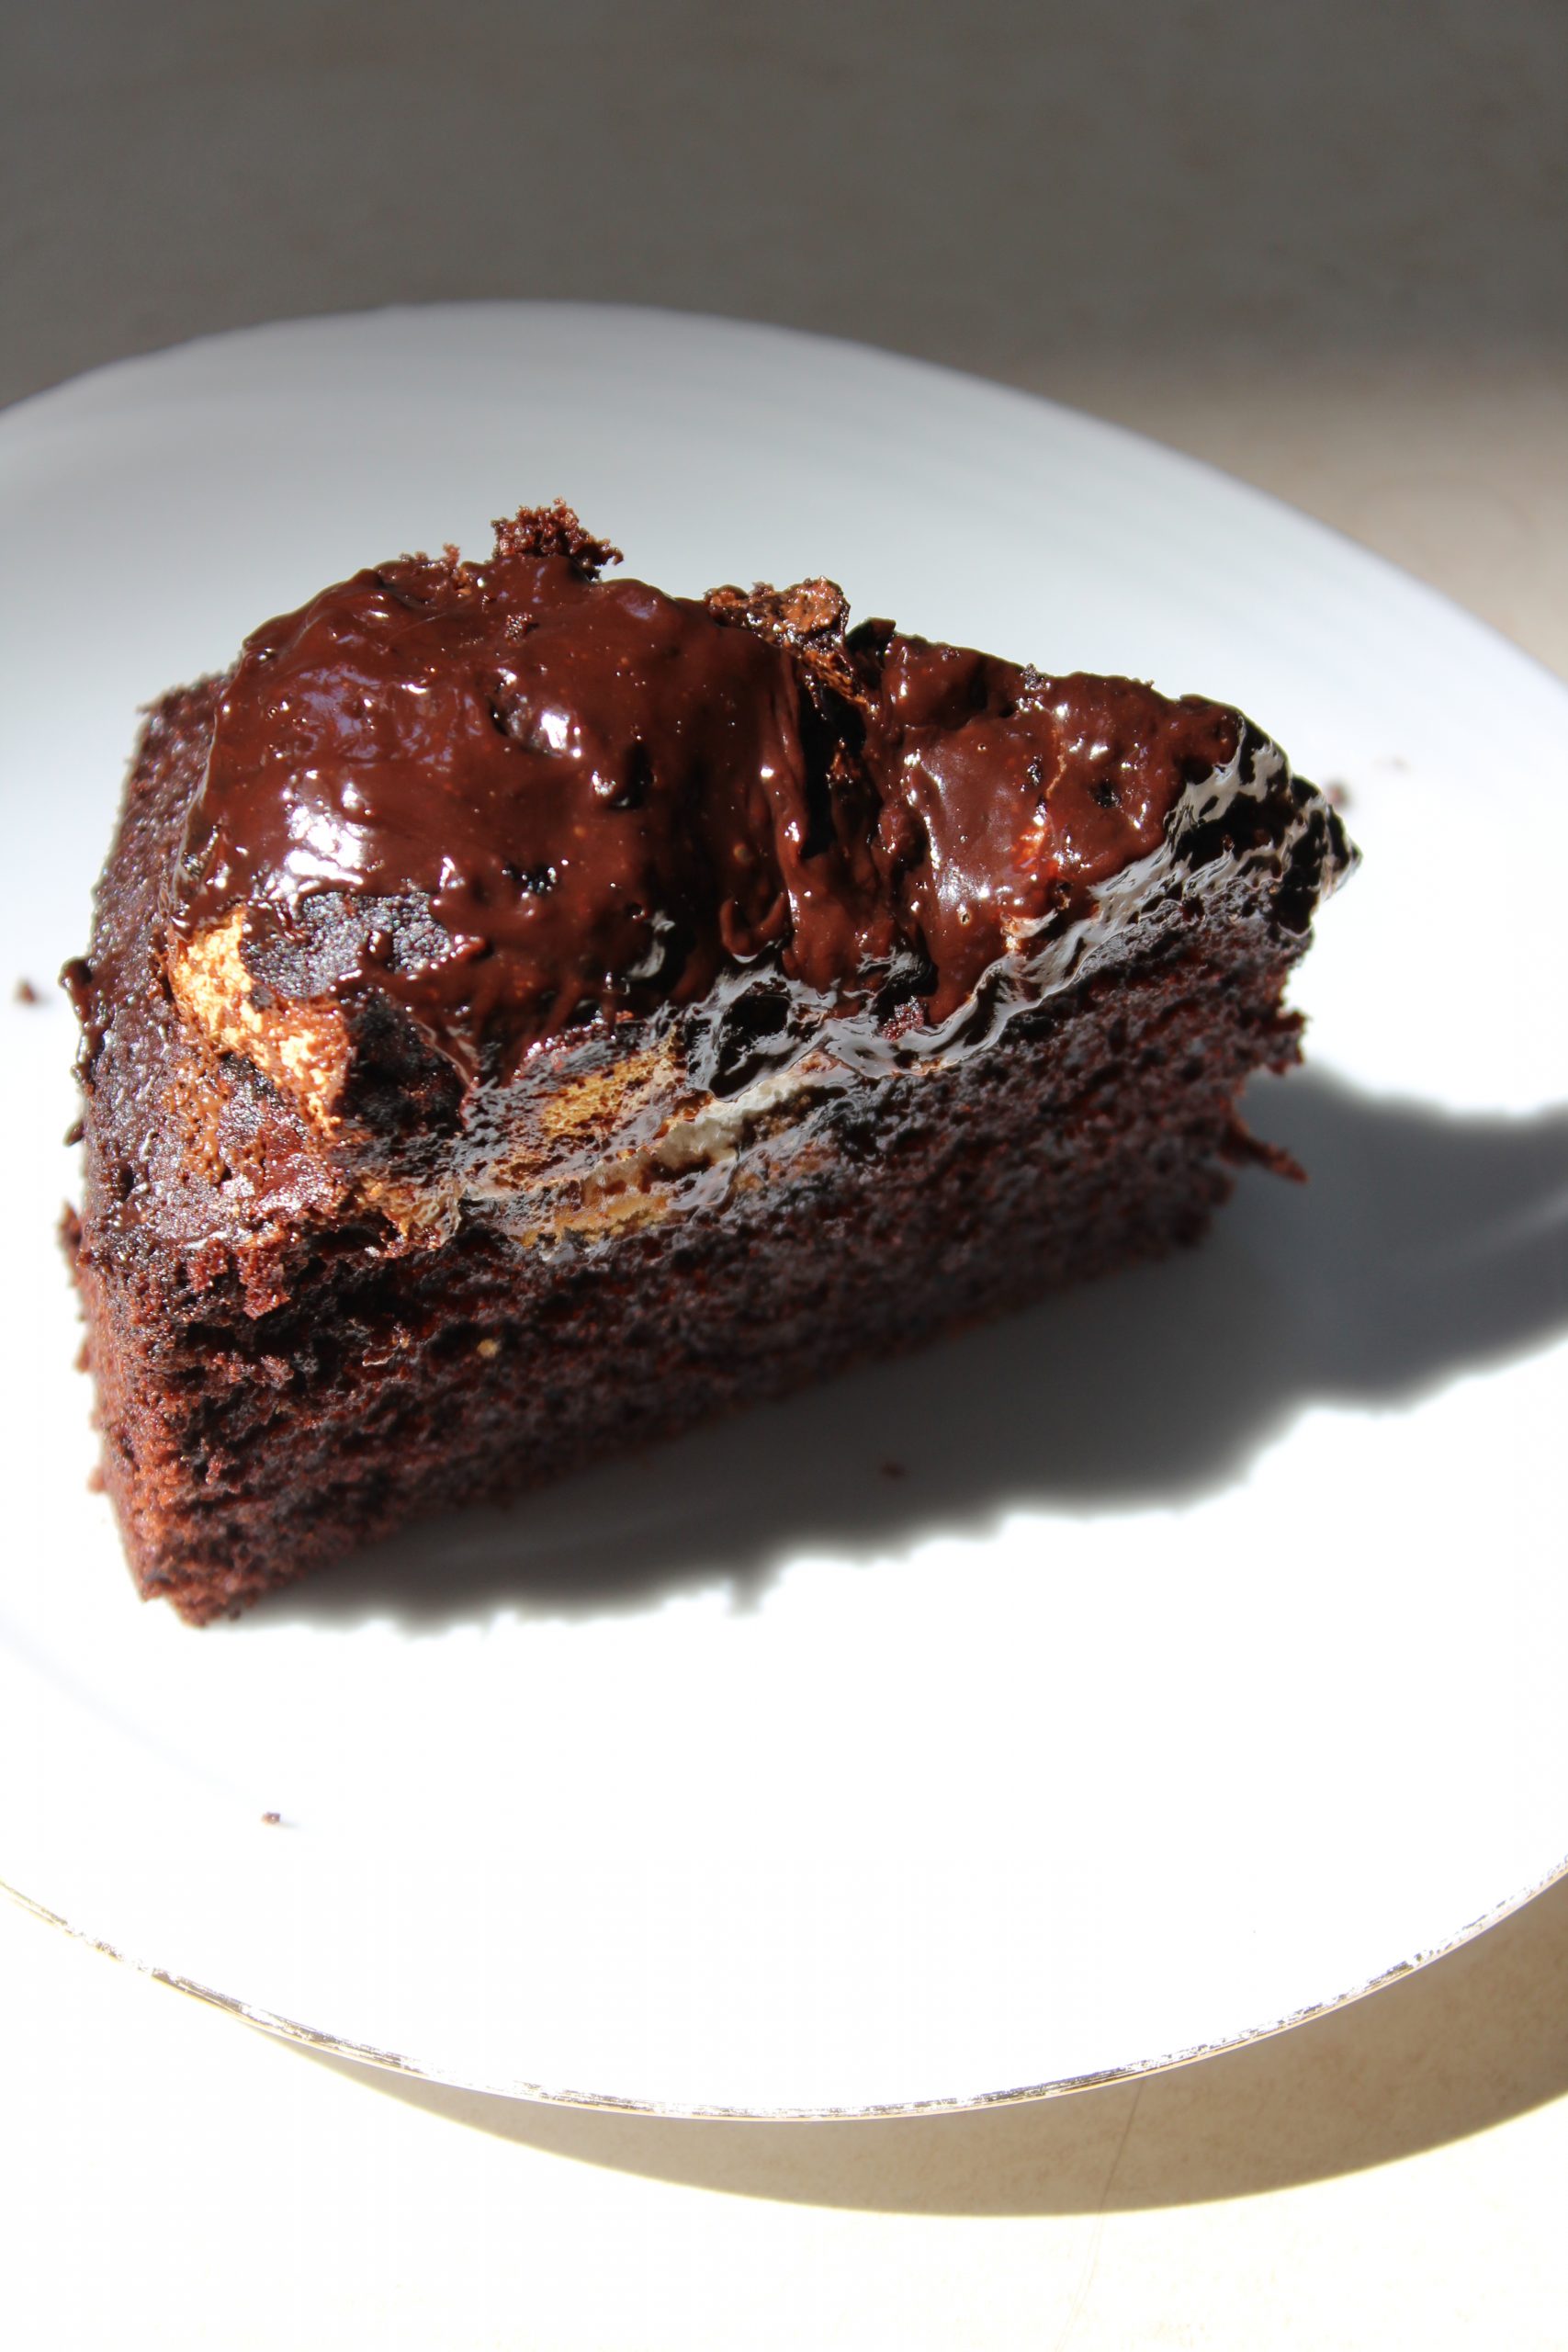 עוגת קרמבו פרווה - עוגת שוקולד קקאו במילוי קרמבו (ביסקוויט ומרנג מרשמלו) בציפוי גנאש שוקולד מריר